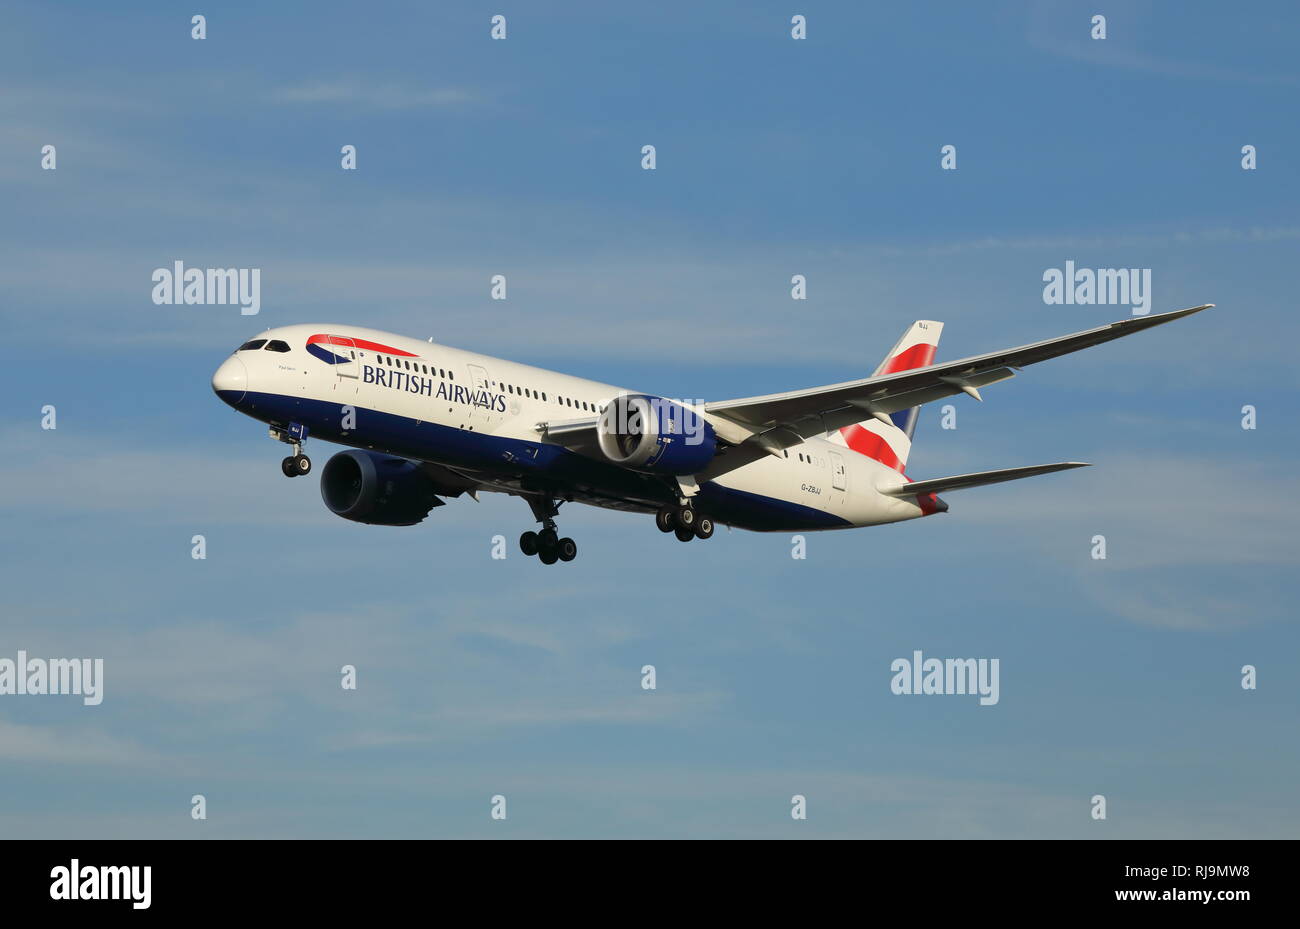 British Airways Boeing 787 Dreamliner passenger aircraft, reg. no G-ZBJJ. Stock Photo